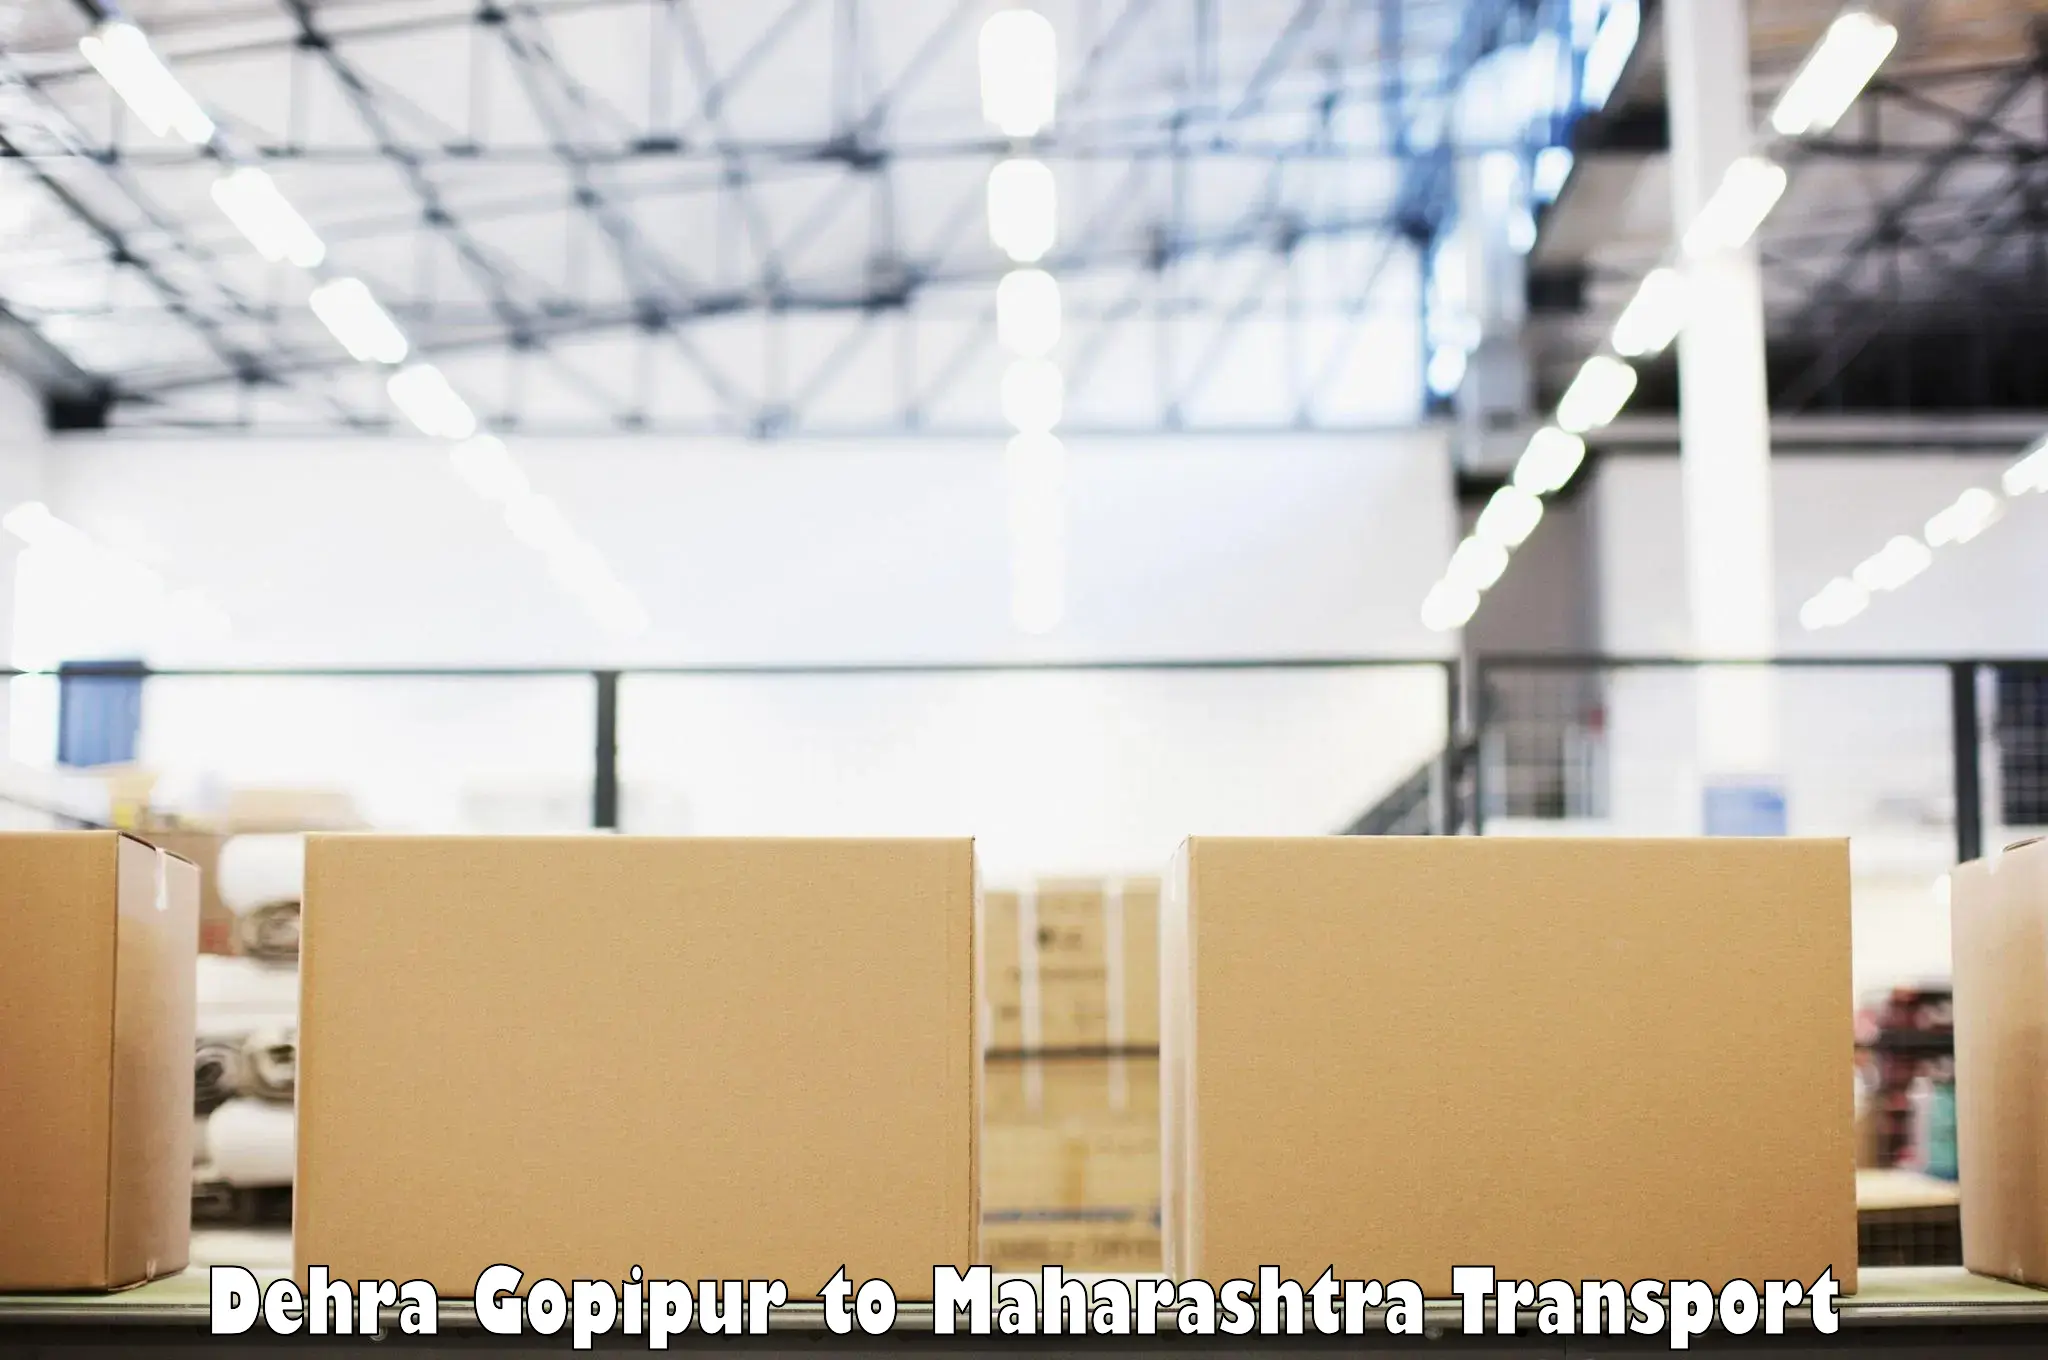 Pick up transport service Dehra Gopipur to Shivajinagar